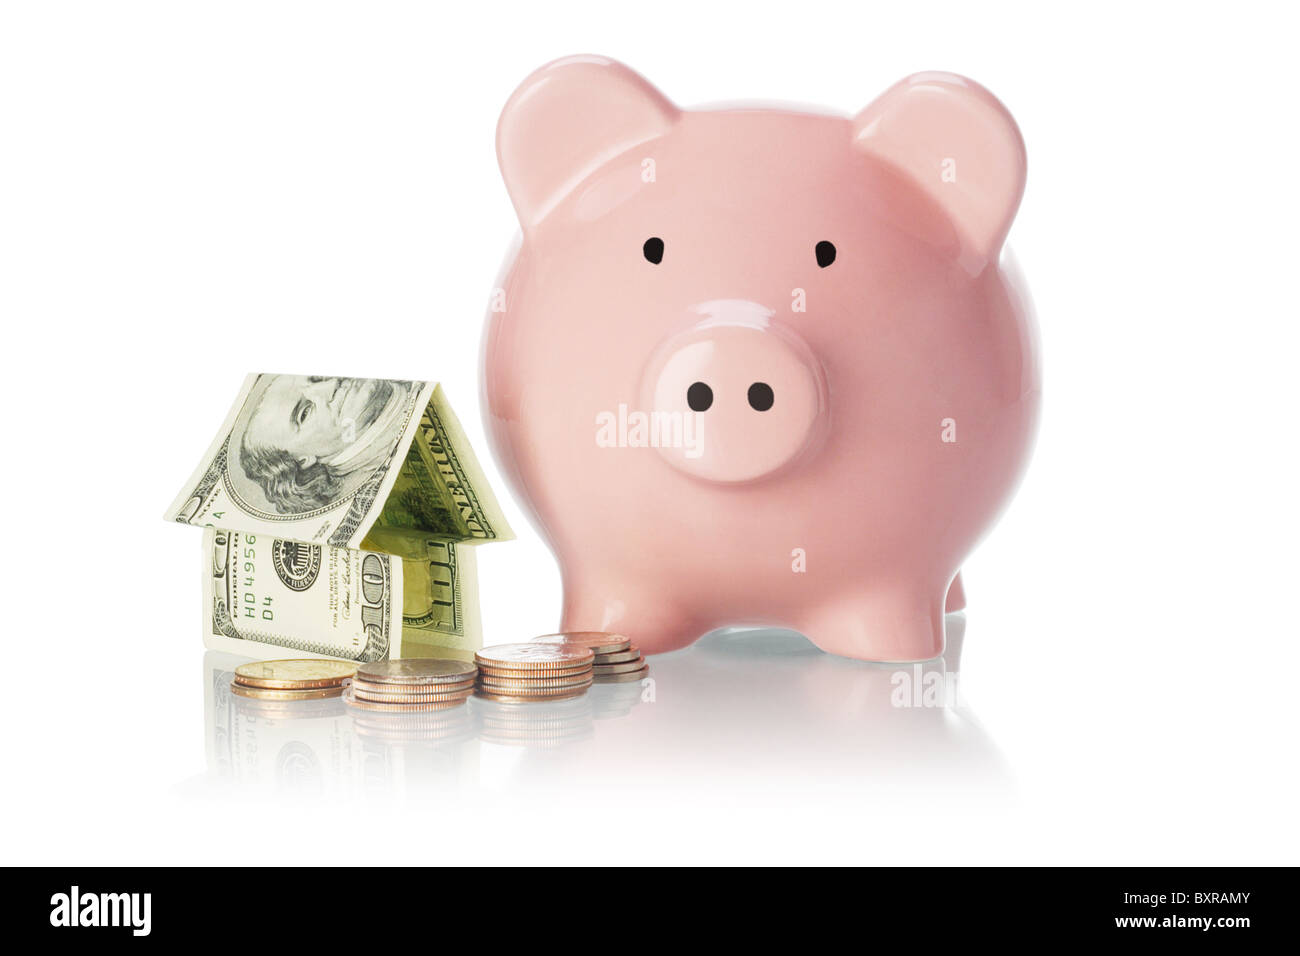 Ersparnisse und Investitionen - Sparschwein, Geld-Haus und Münzen auf  weißem Hintergrund Stockfotografie - Alamy